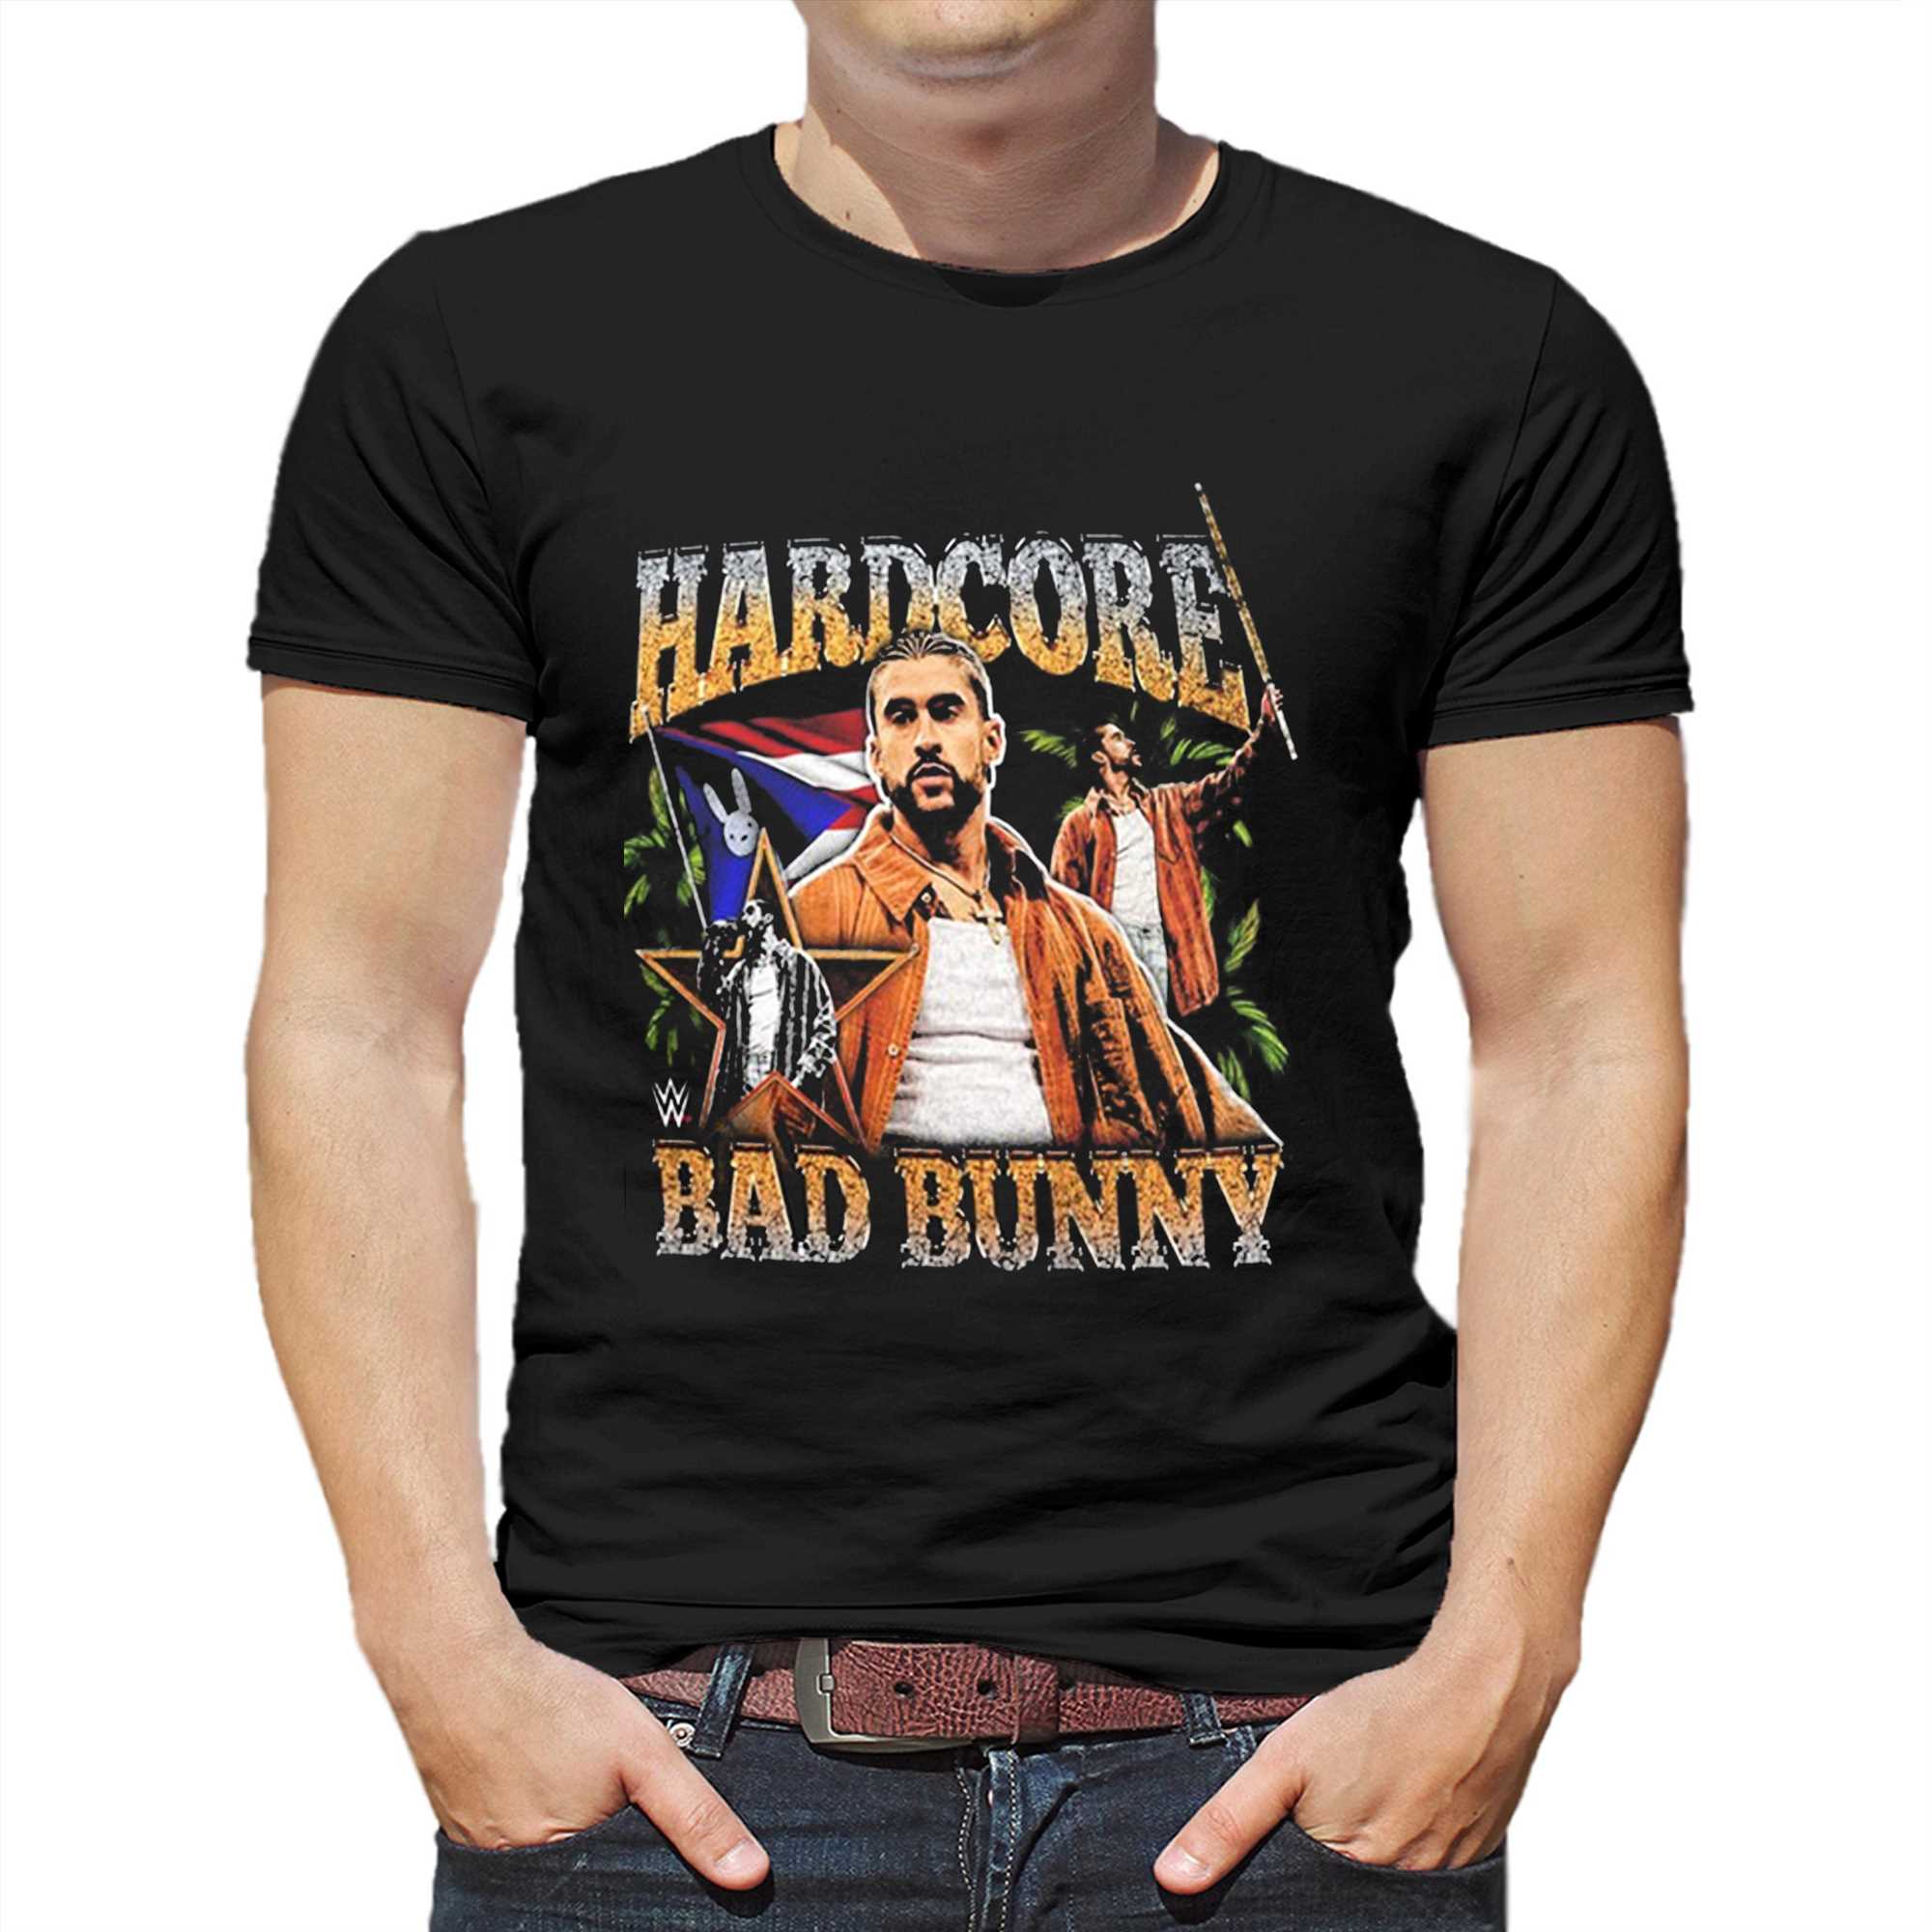 Bad Bunny Hardcore T-shirt Shibtee Clothing